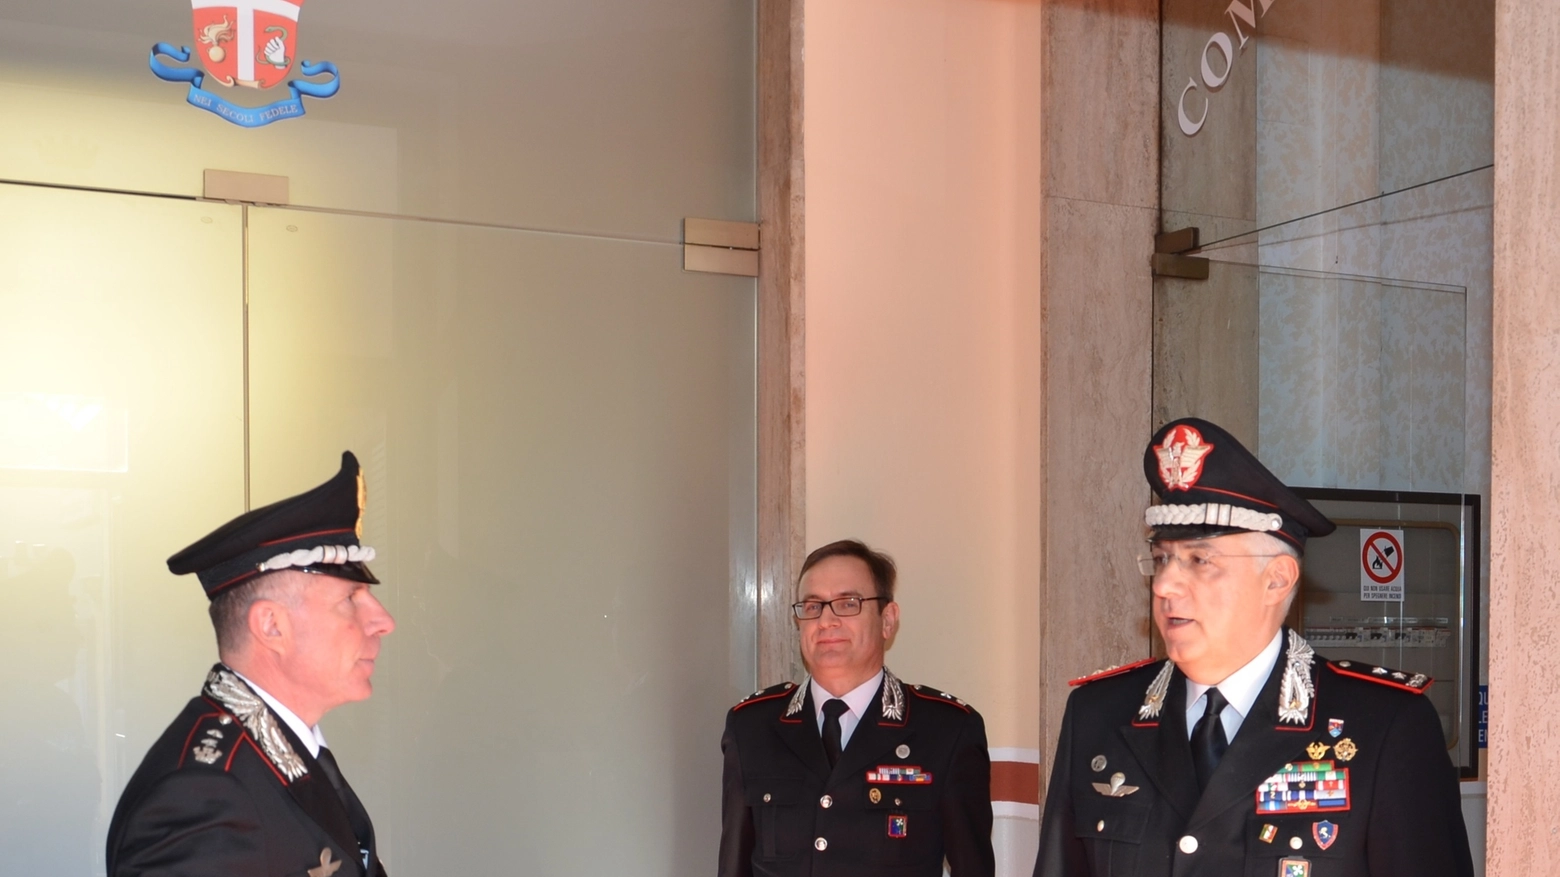 La visita del comandante Luzi a Cremona